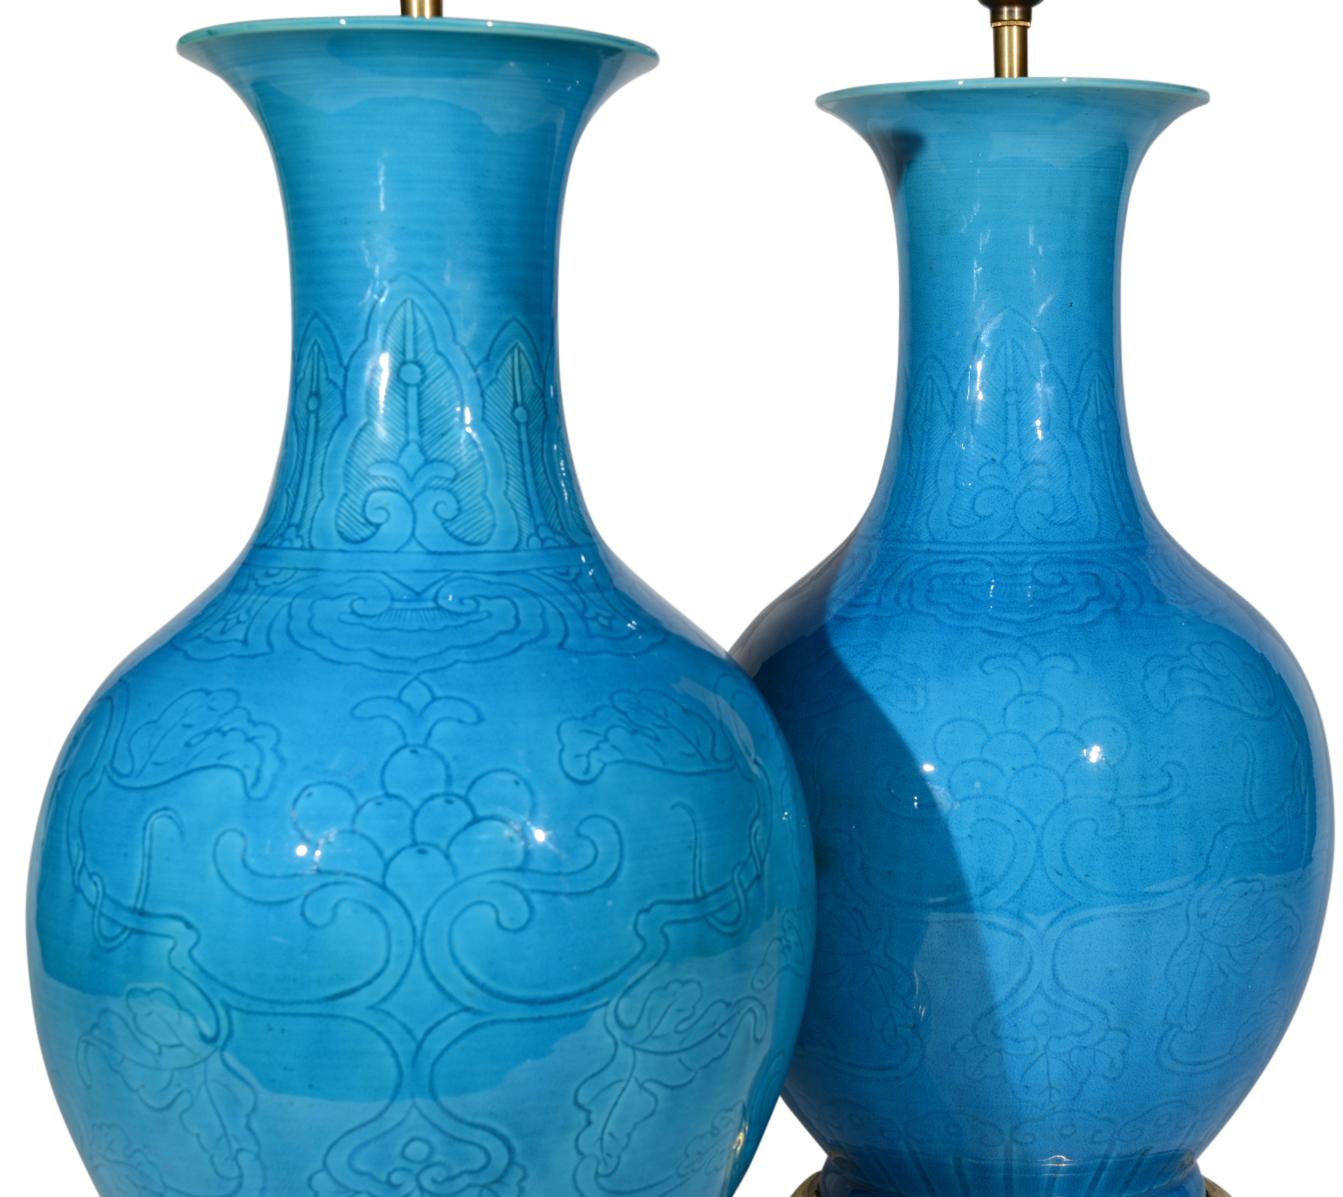 Ein sehr schönes Paar chinesischer türkisfarben glasierter Balustervasen aus dem späten 19. Jahrhundert, jeweils mit schmalen, ausgestellten Hälsen und mit stilisiertem Lotos- und Blattwerkdekor, jetzt als Tischlampen mit handvergoldeten, gedrehten